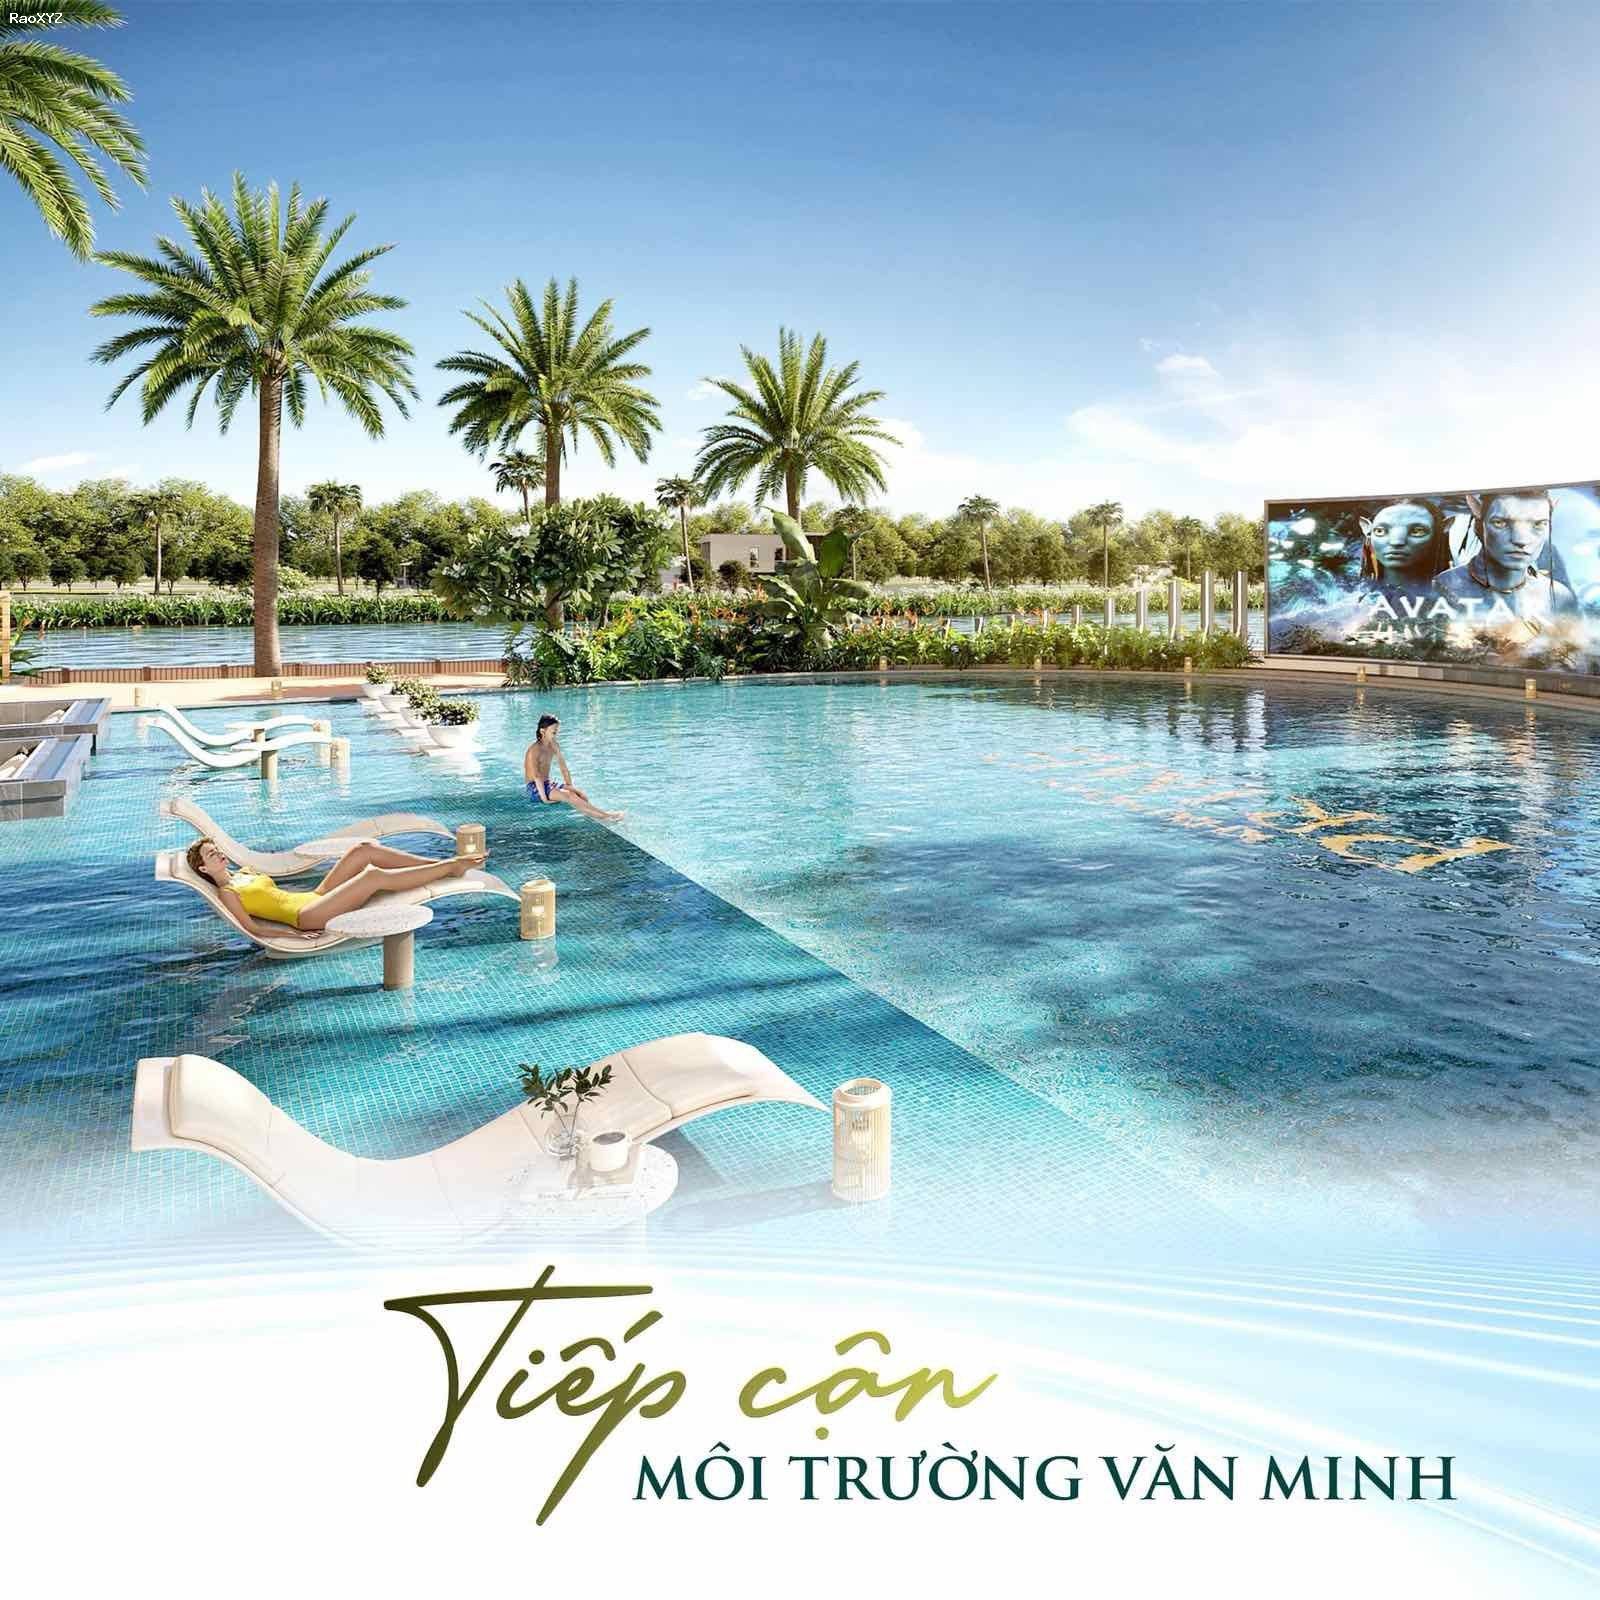 Trả trước 700 triệu Thanh Toán Linh Hoạt 0.5%/Tháng, Hỗ Trợ Lên Đến 8 Năm